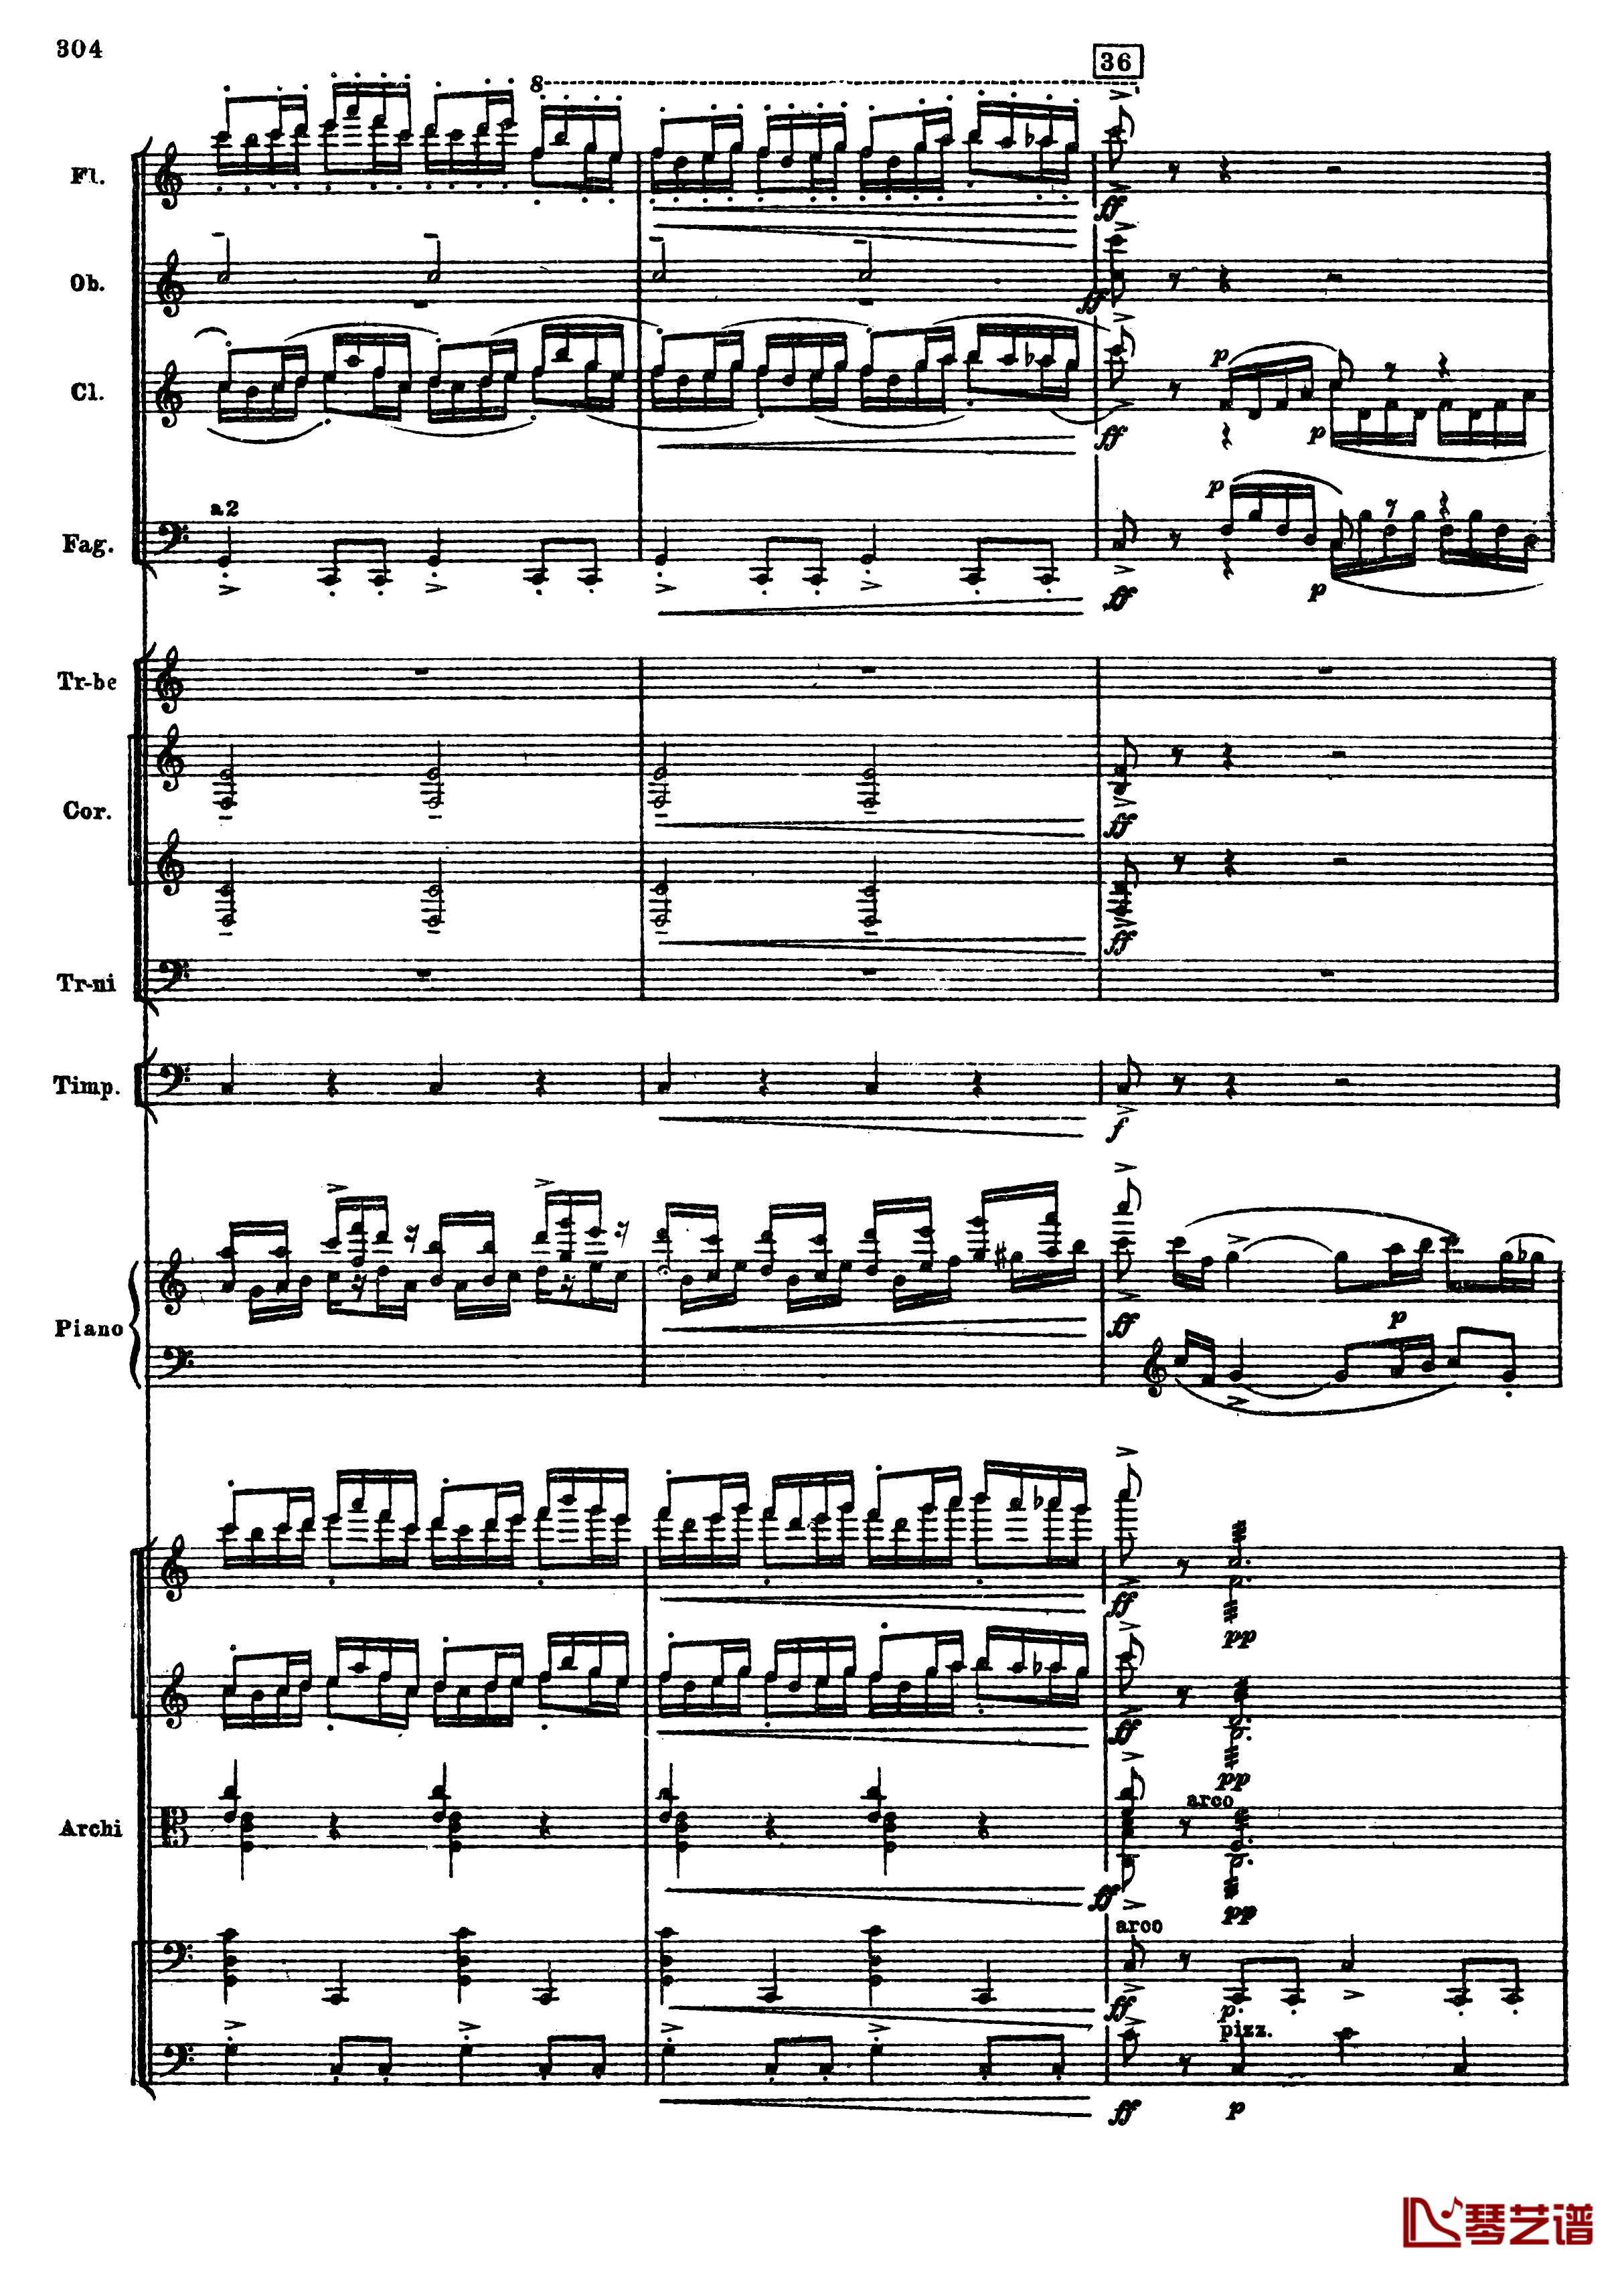 普罗科菲耶夫第三钢琴协奏曲钢琴谱-总谱-普罗科非耶夫36